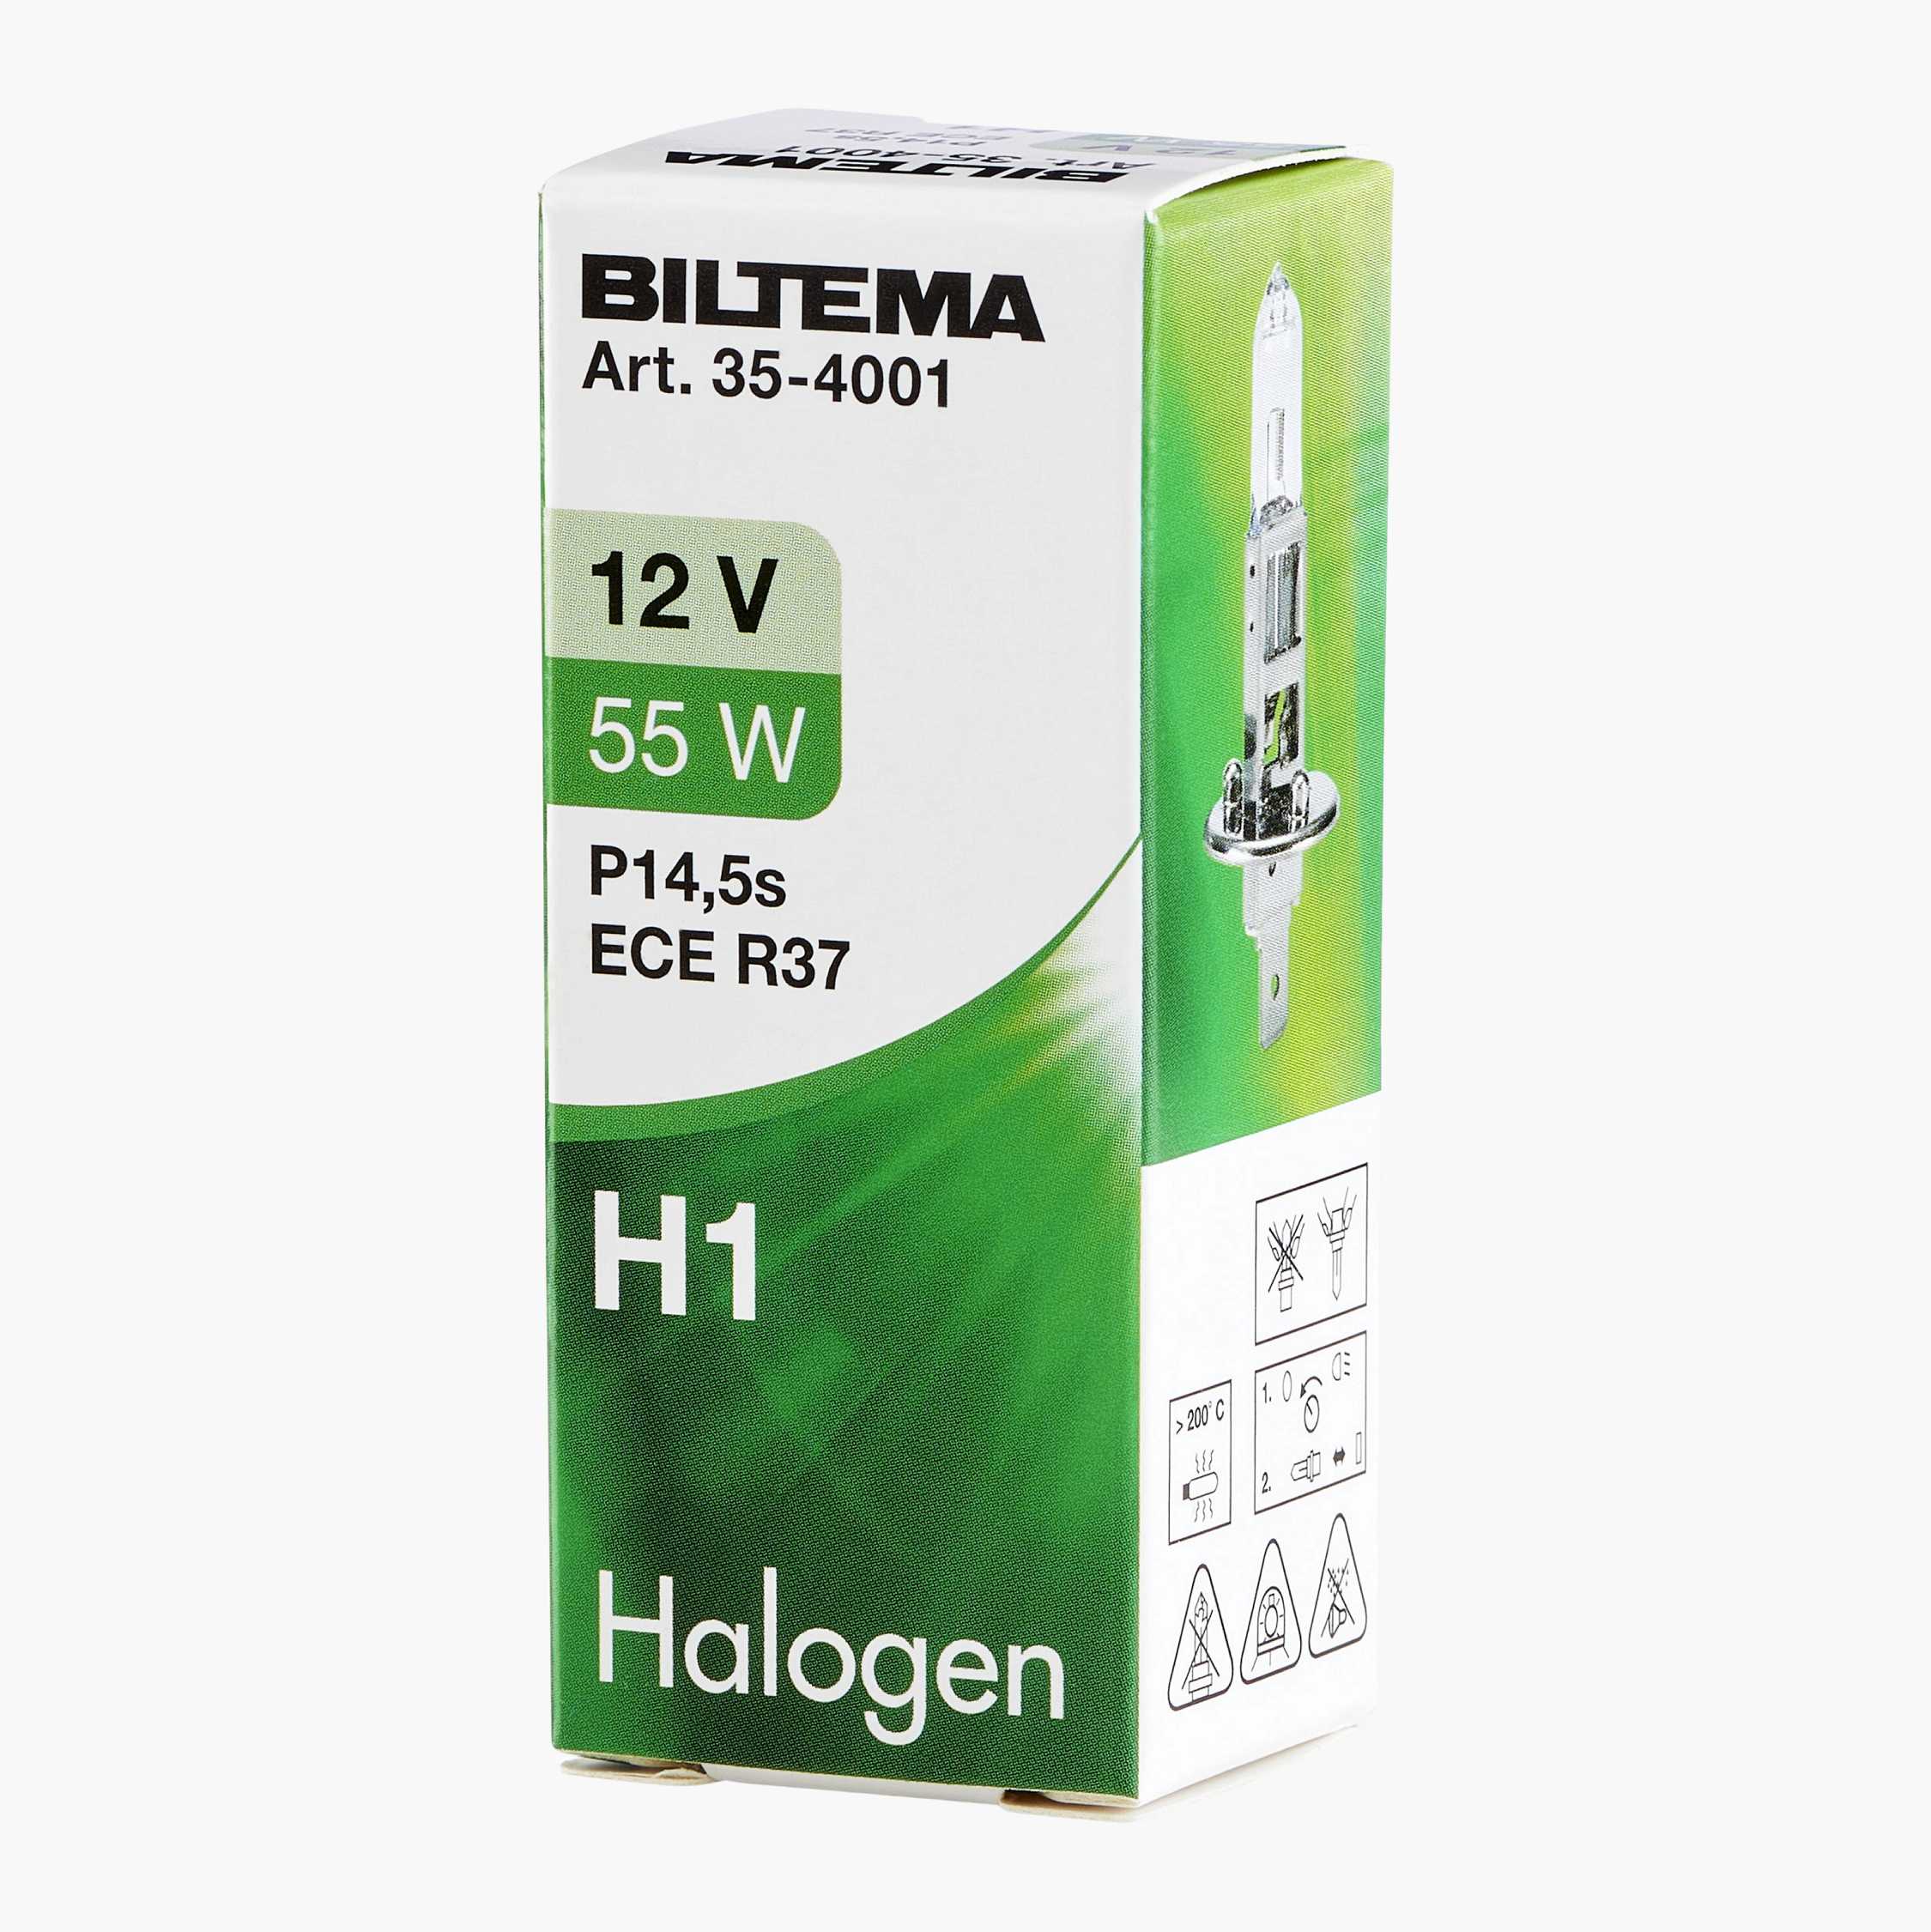 Halogen bulb H1, 12 V, 55 W 